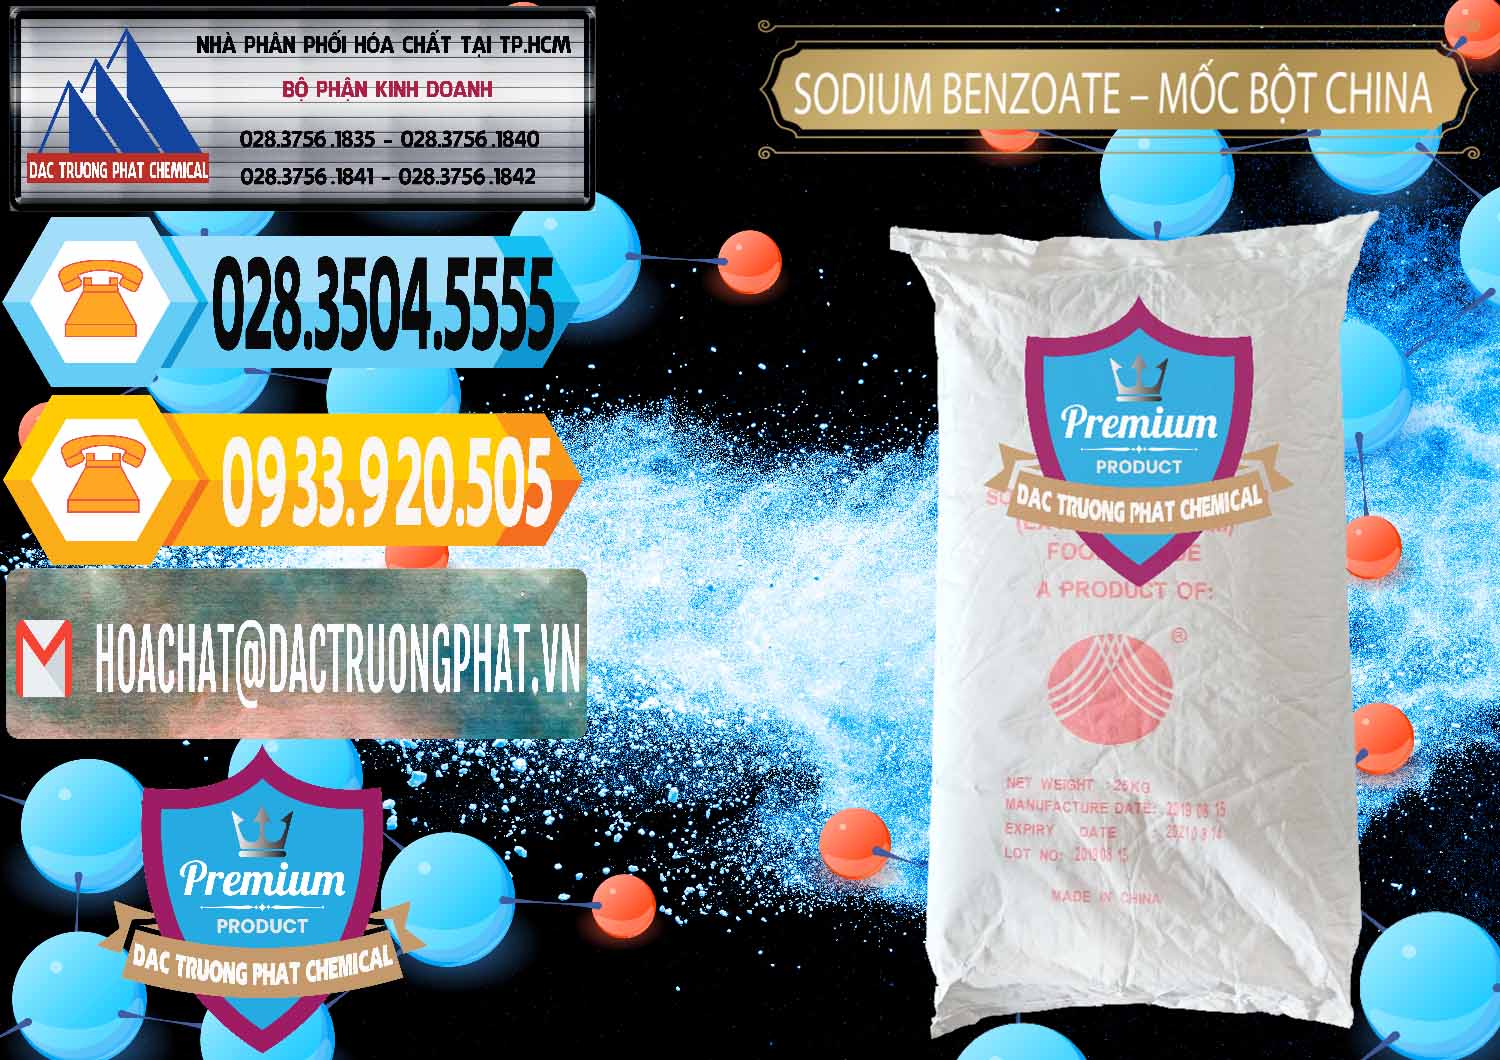 Bán _ cung cấp Sodium Benzoate - Mốc Bột Chữ Cam Food Grade Trung Quốc China - 0135 - Đơn vị chuyên cung cấp _ kinh doanh hóa chất tại TP.HCM - hoachattayrua.net